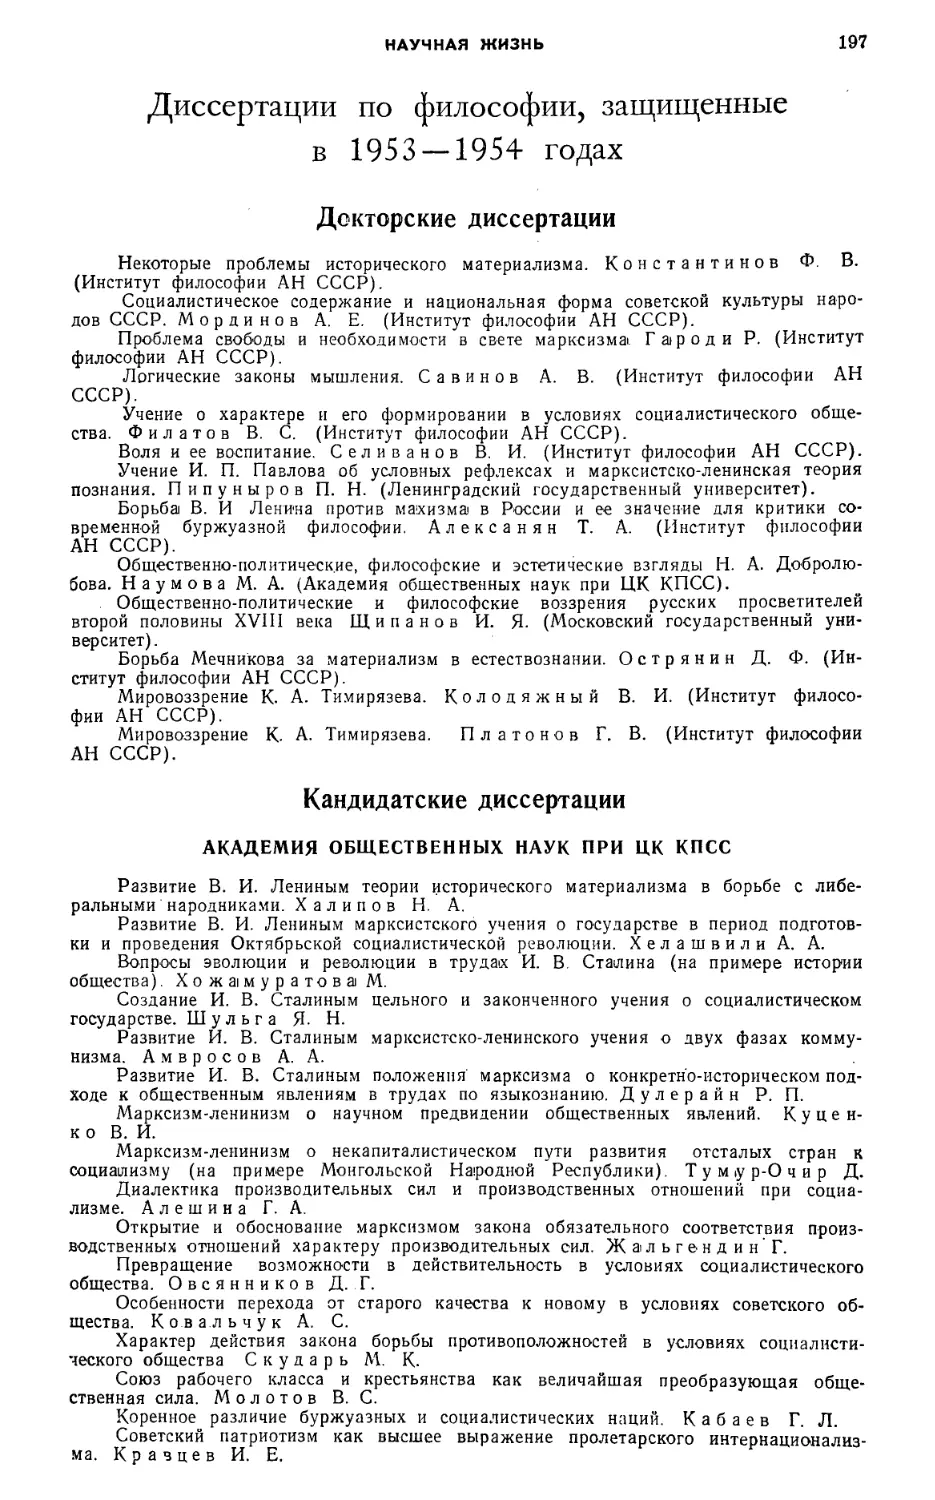 Диссертации по философии, защищенные в 1953—1954 гг